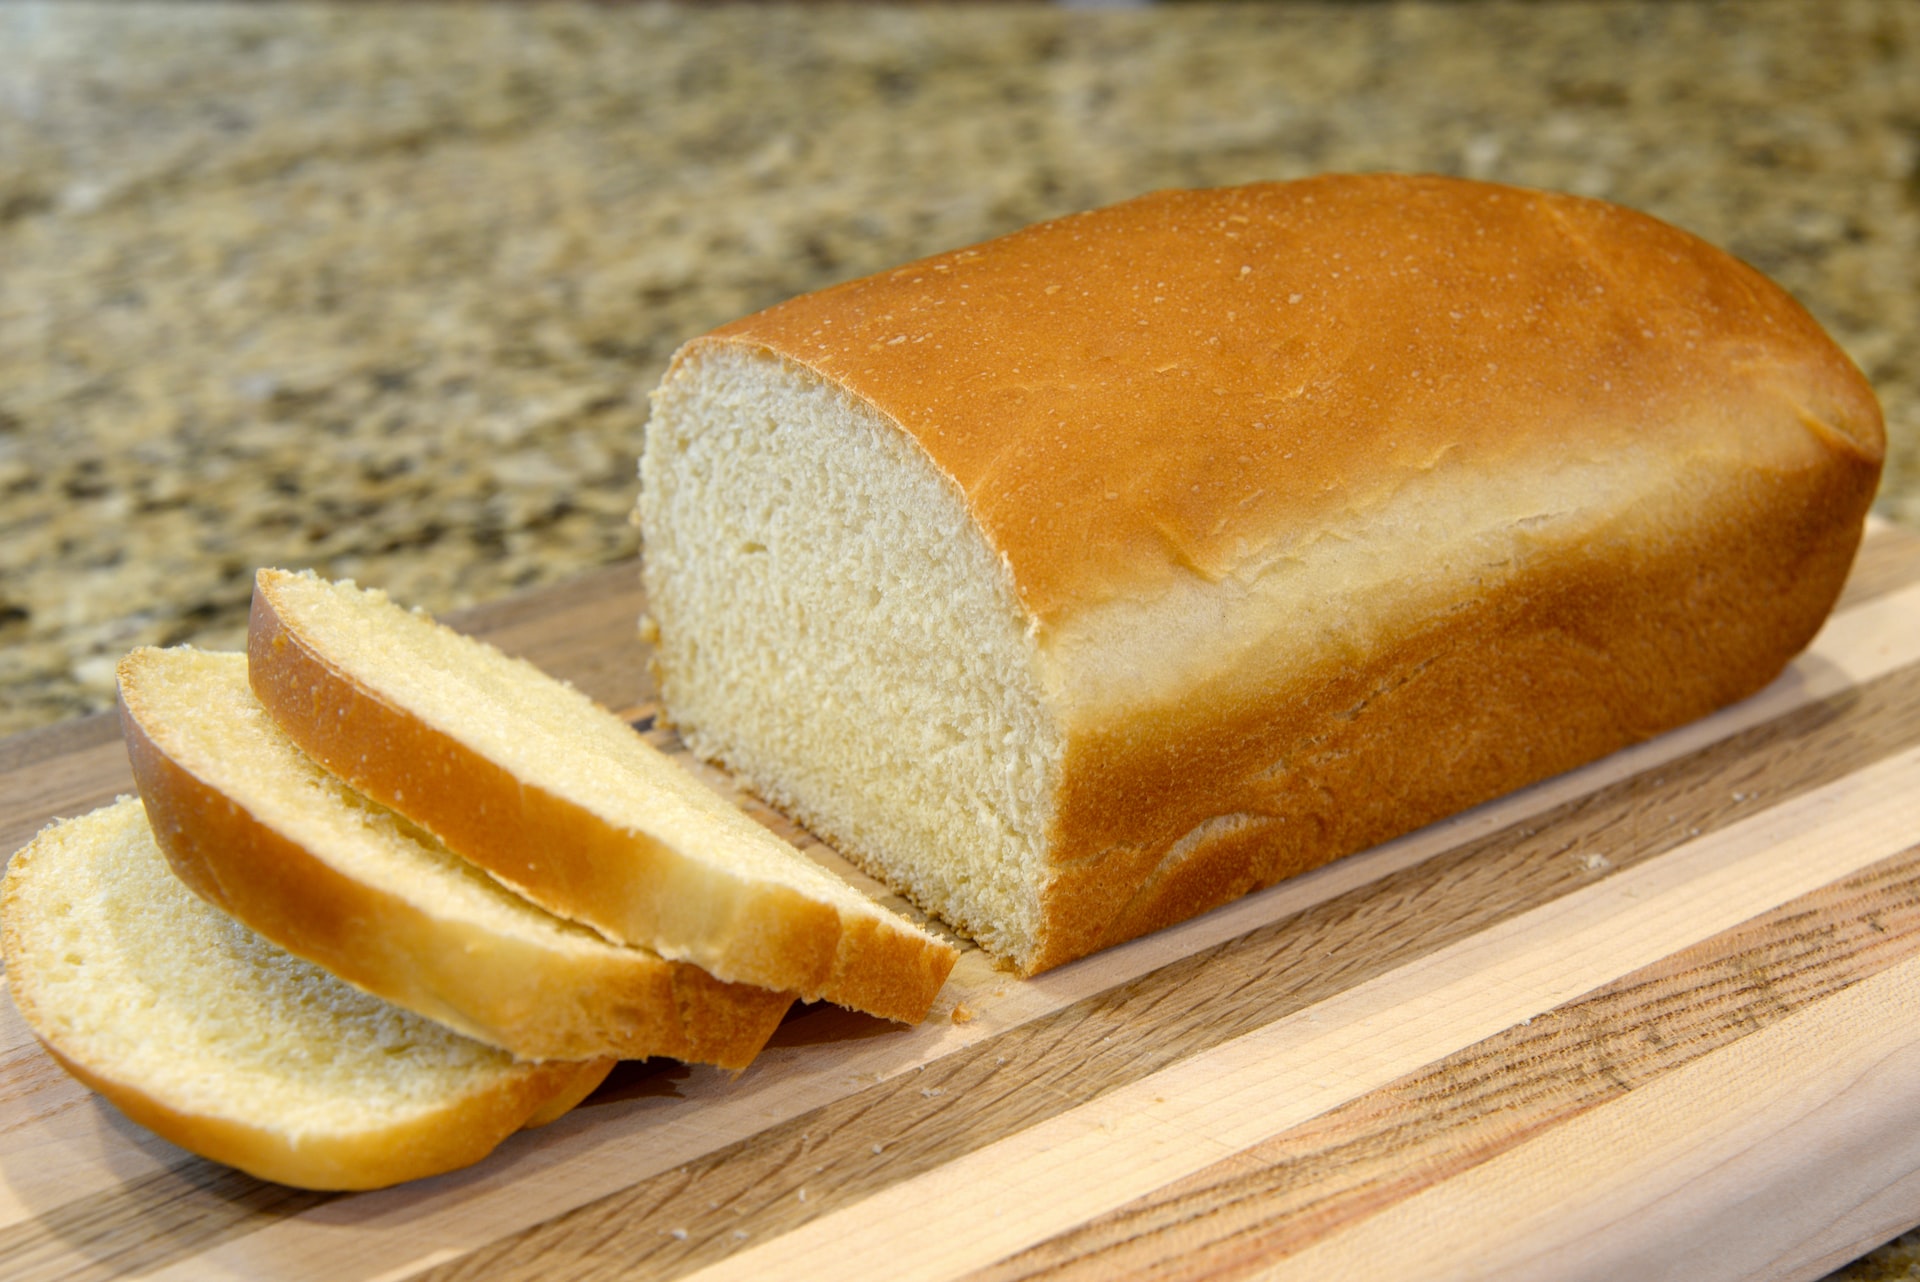 El origen del pan de molde - Horgrupan